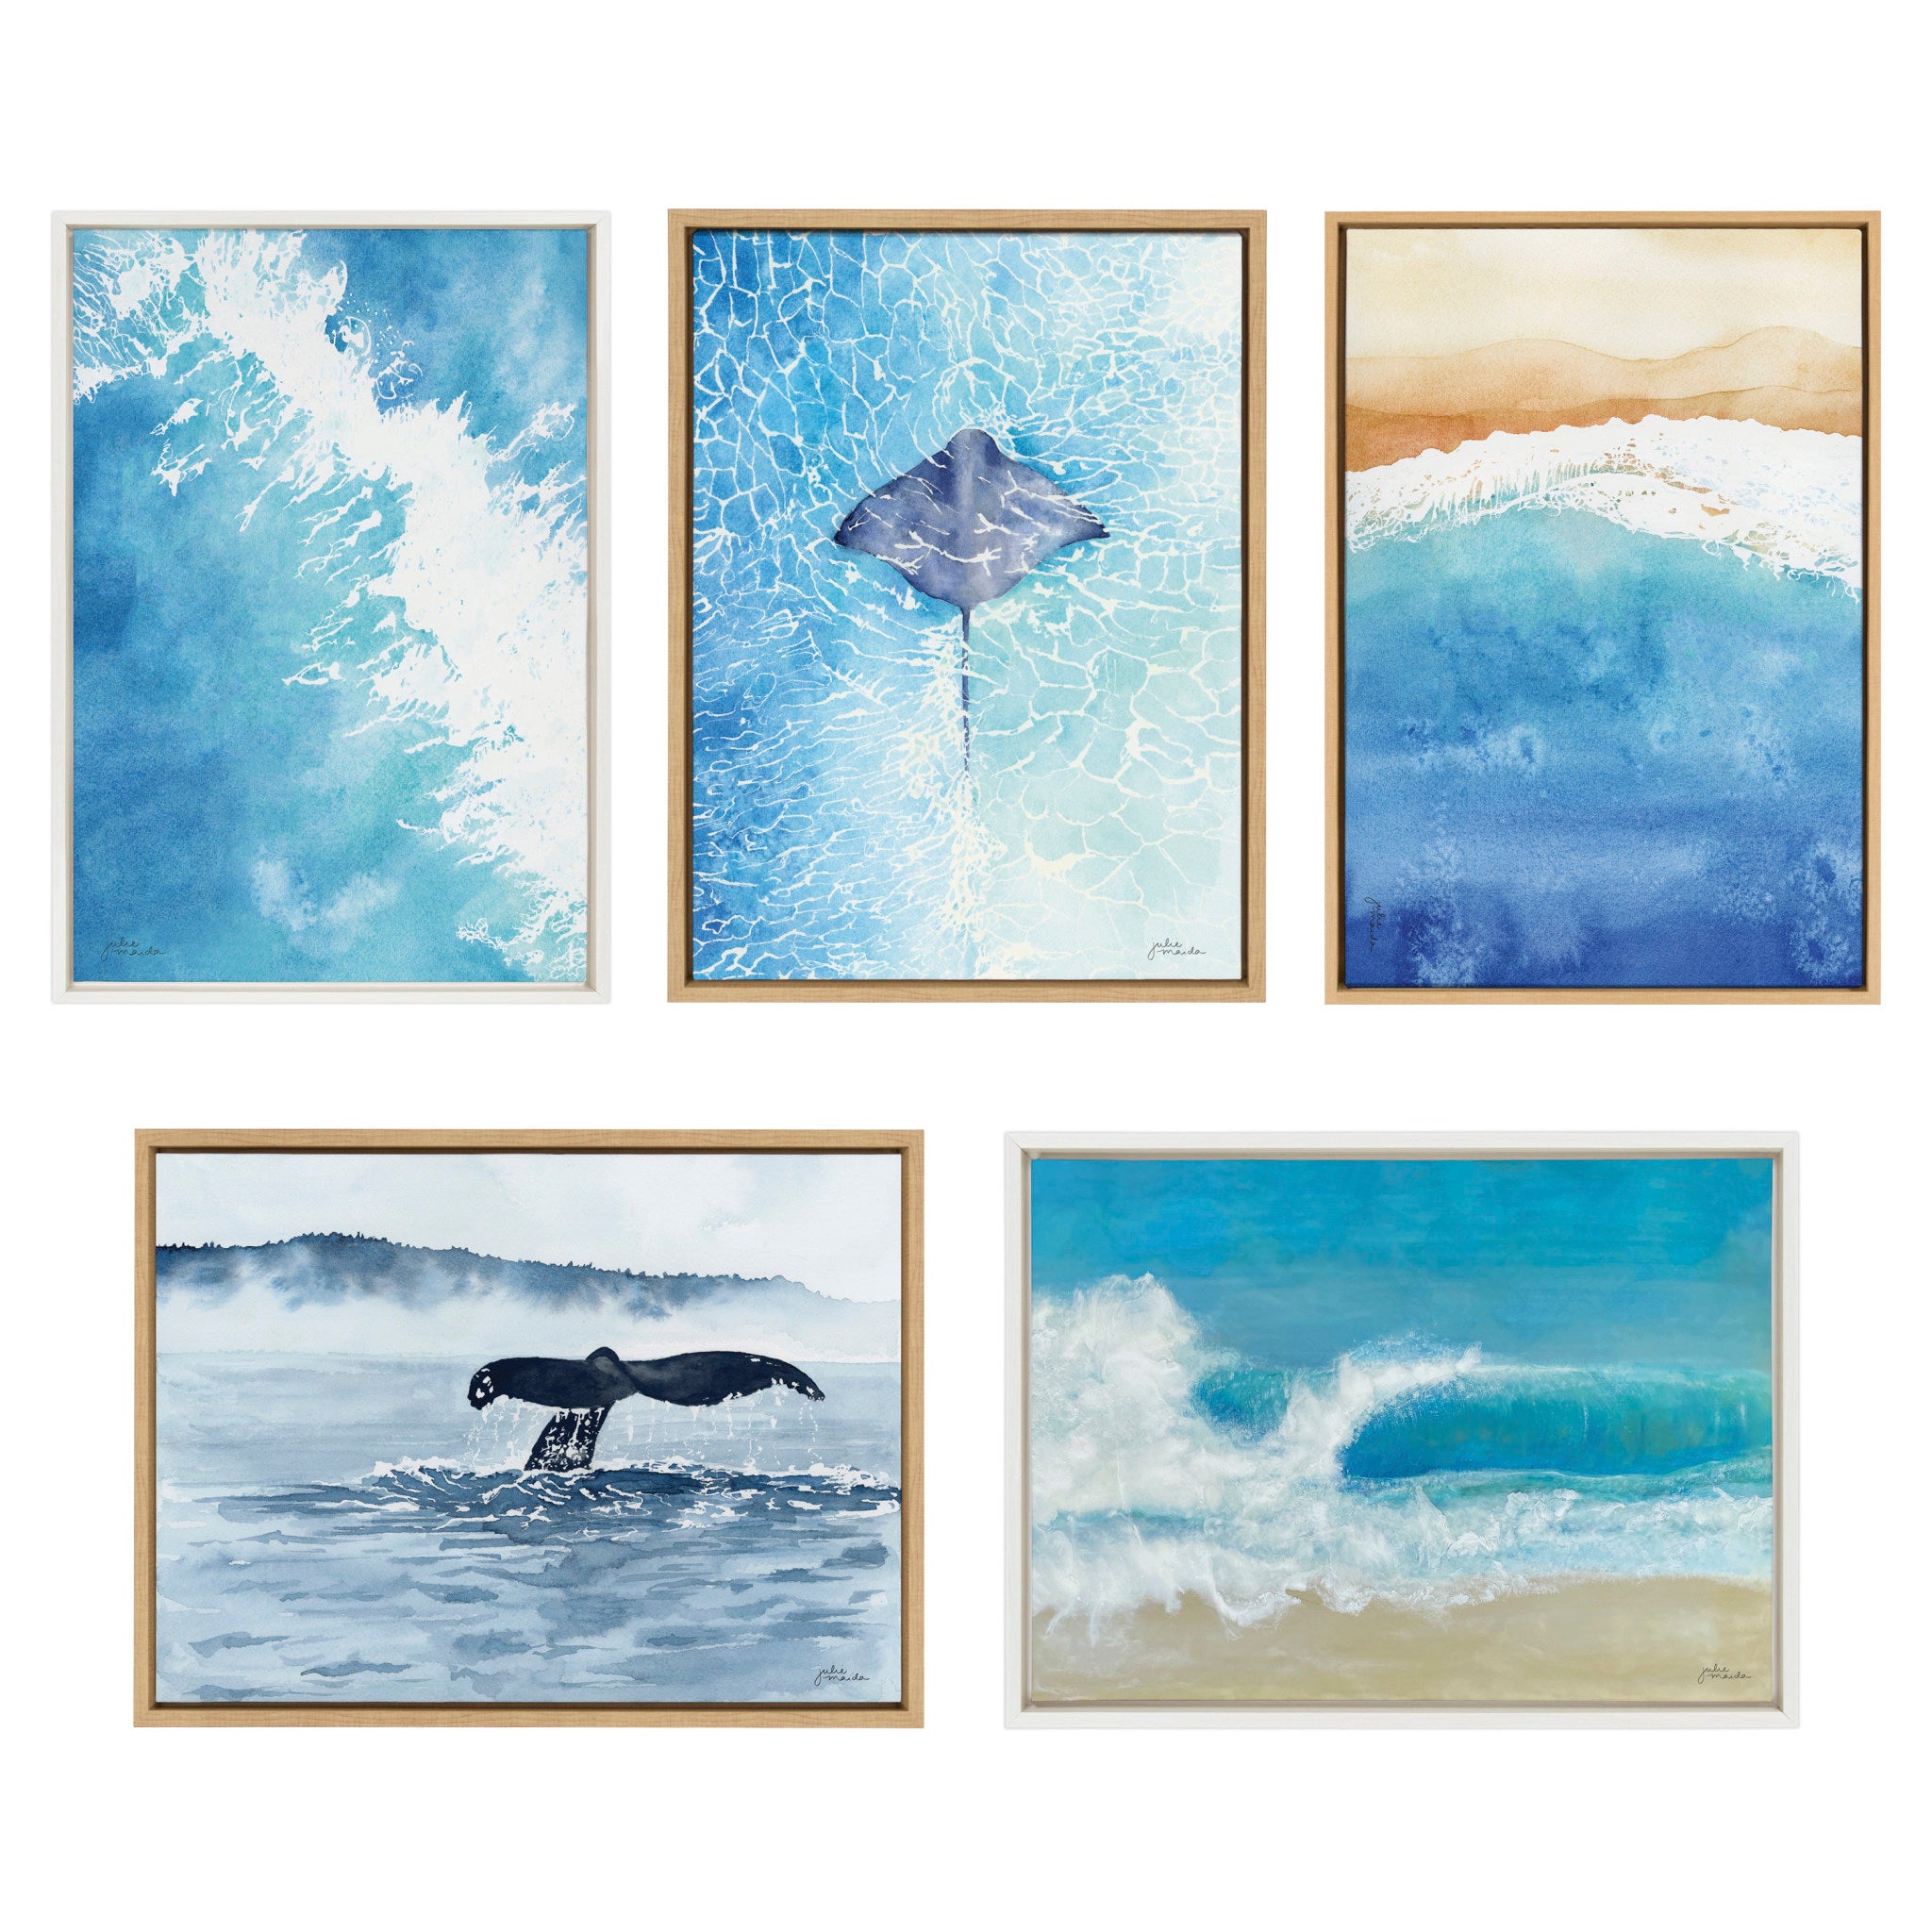 Sylvie Beach Day Framed Canvas by Julie Maida